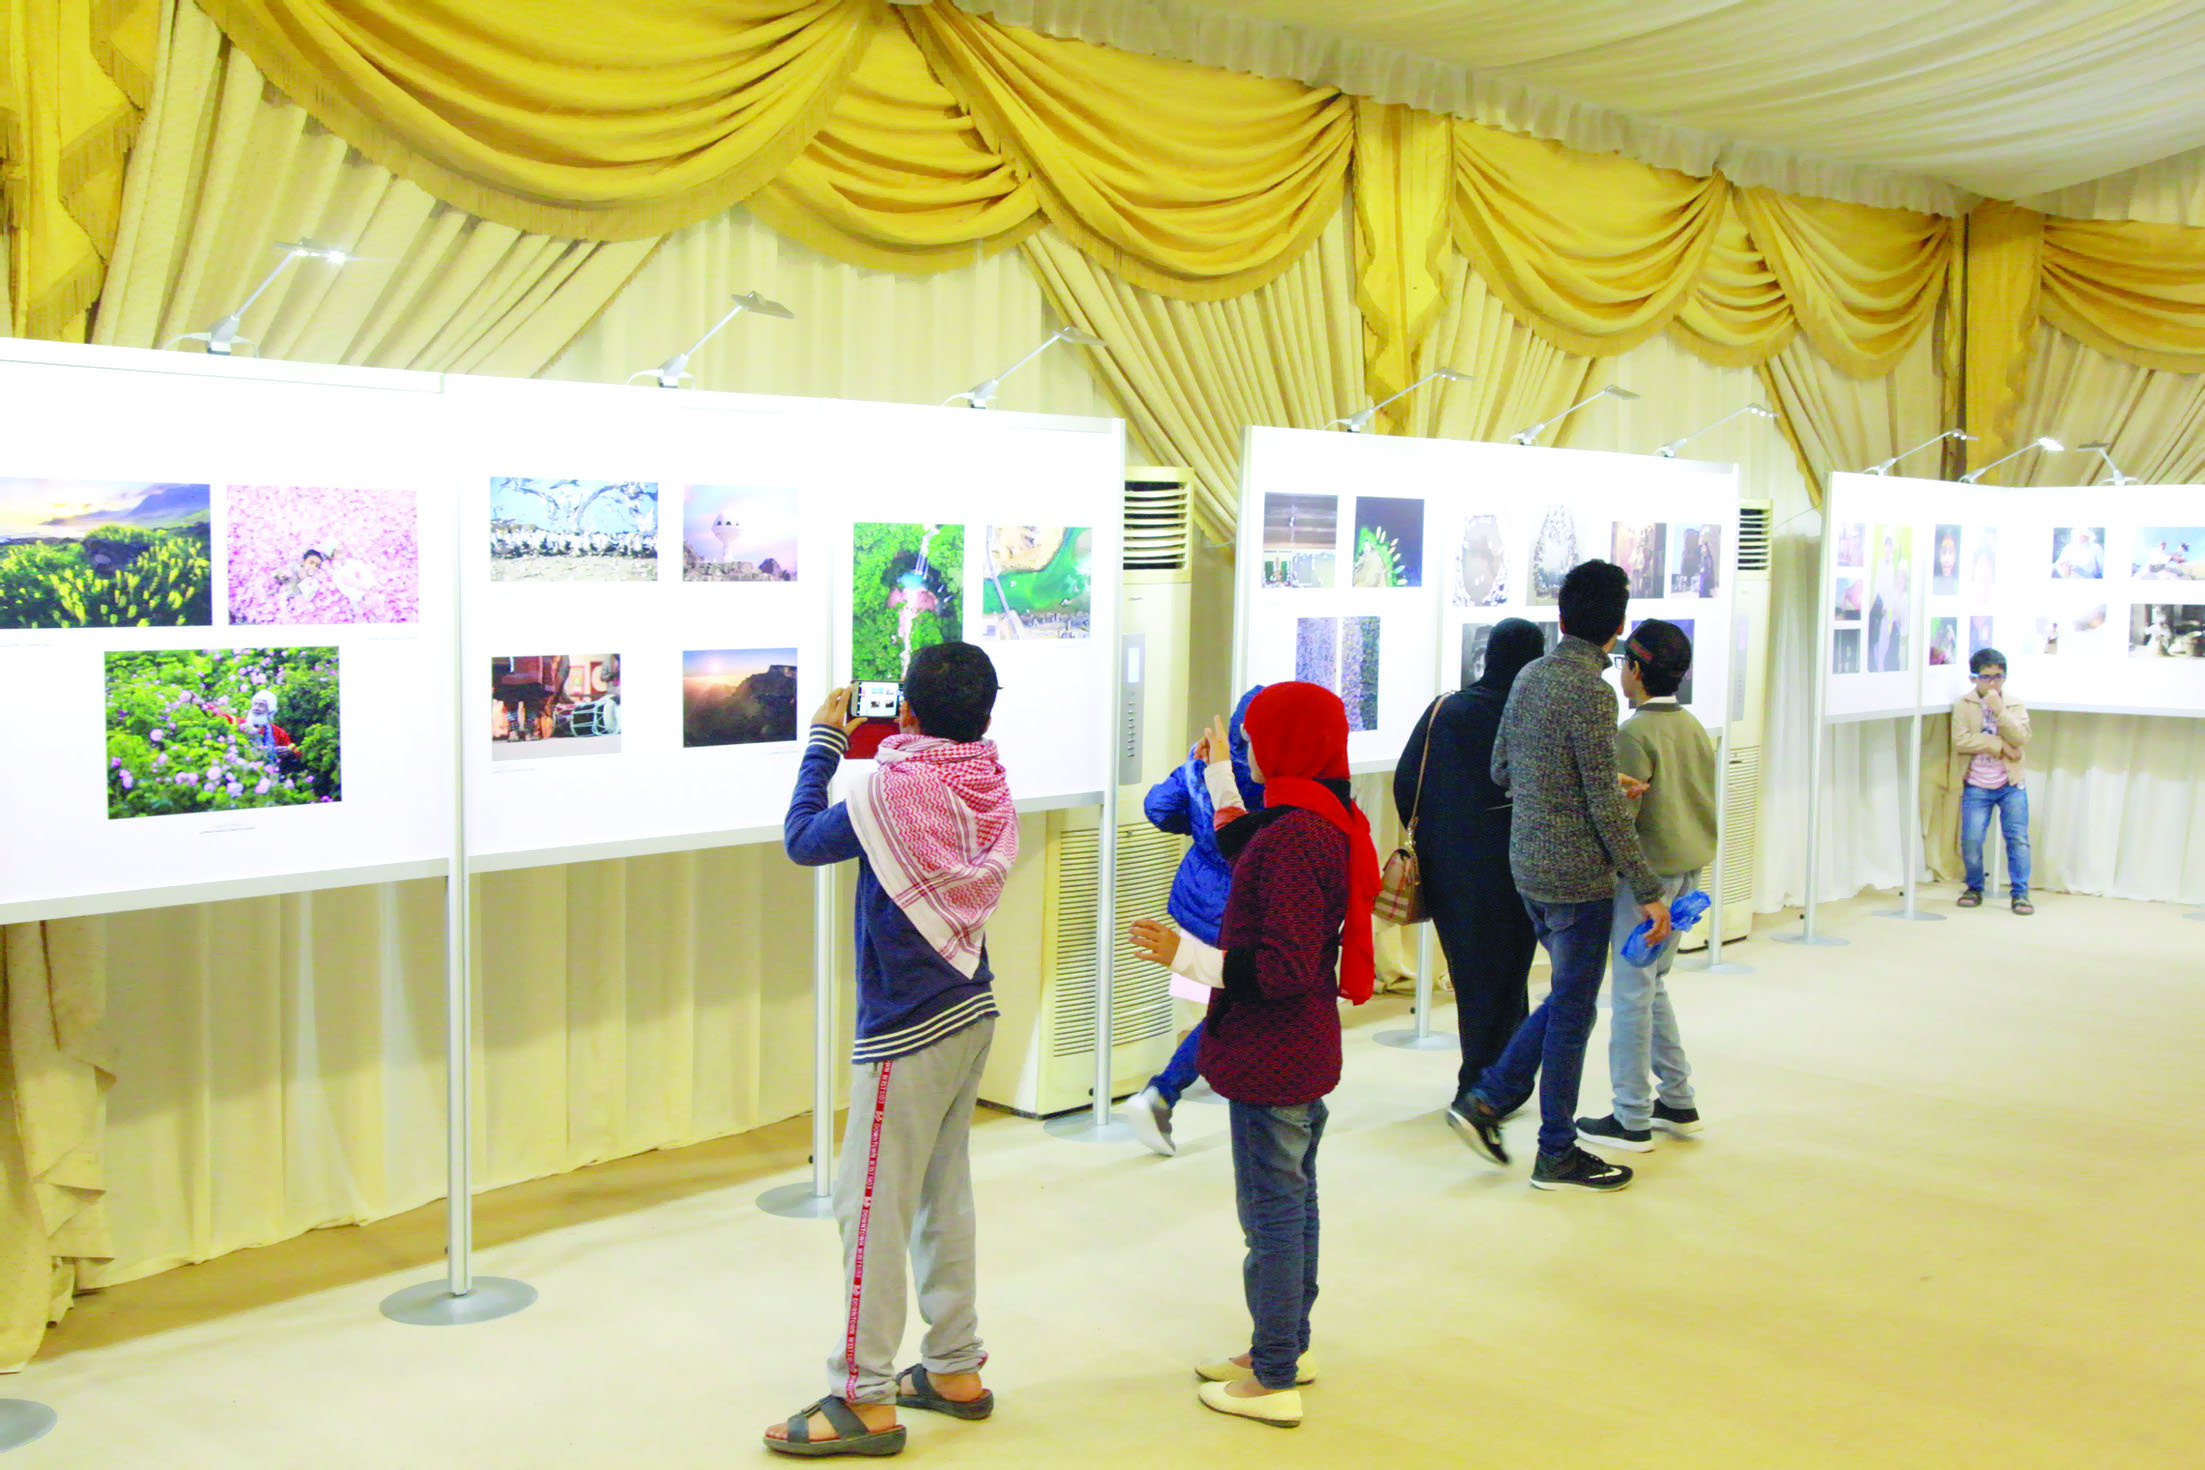 تنوع وجمال في معرض «صور من عمان»